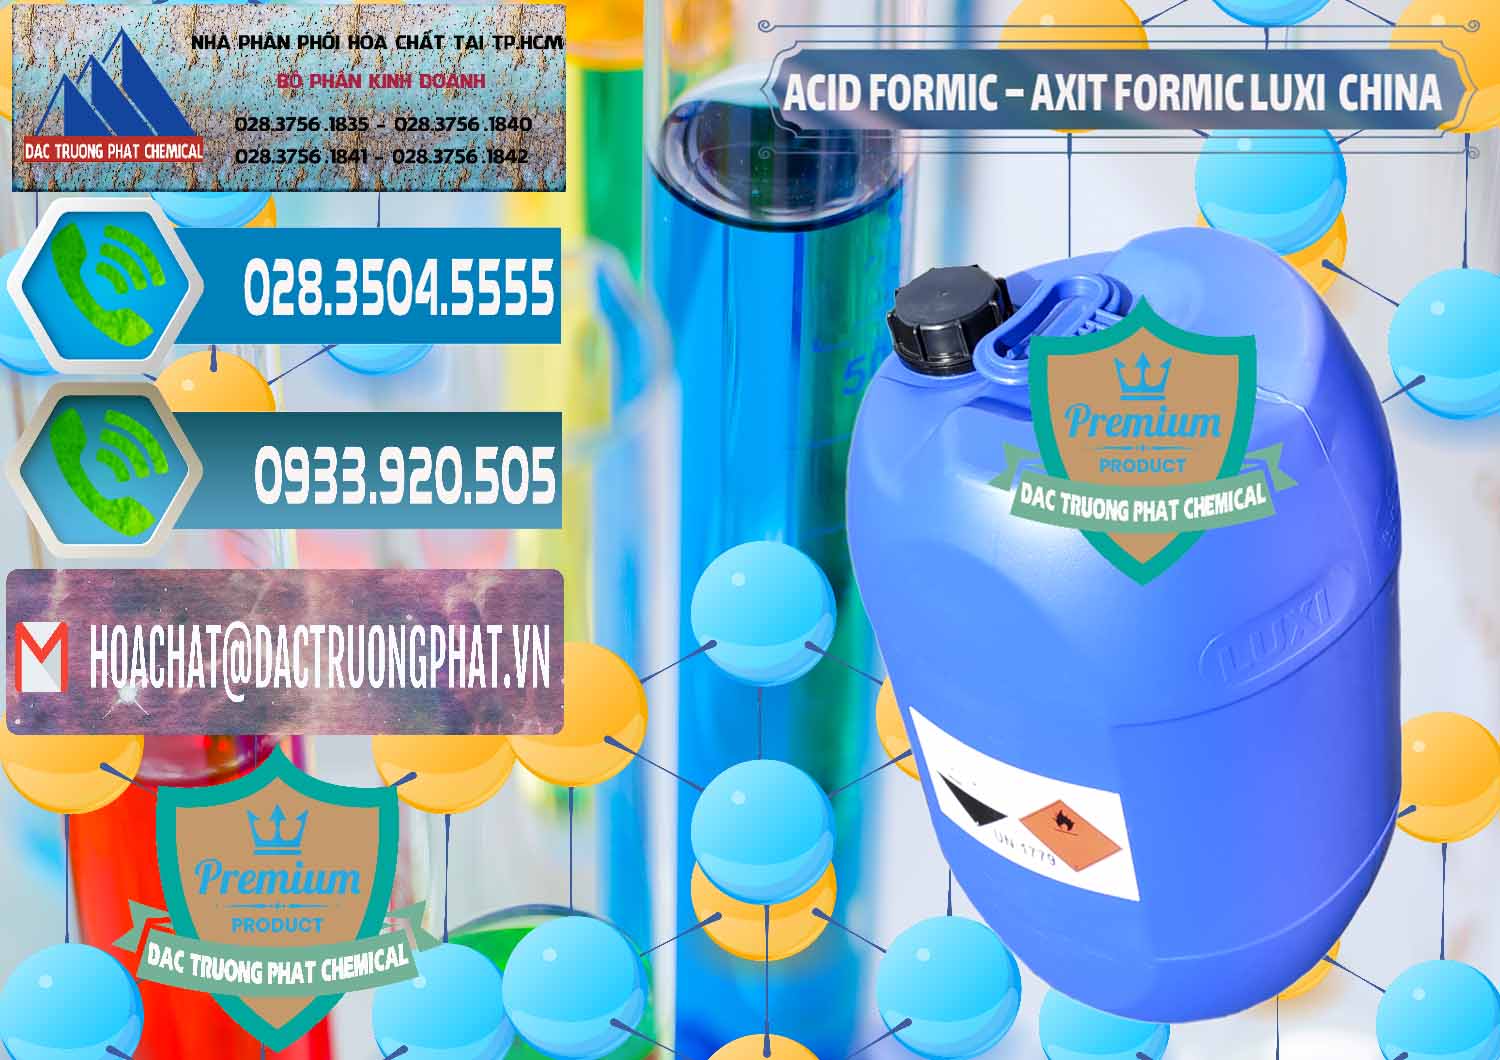 Nơi cung cấp _ bán Acid Formic - Axit Formic Luxi Trung Quốc China - 0029 - Đơn vị chuyên cung cấp - bán hóa chất tại TP.HCM - congtyhoachat.net